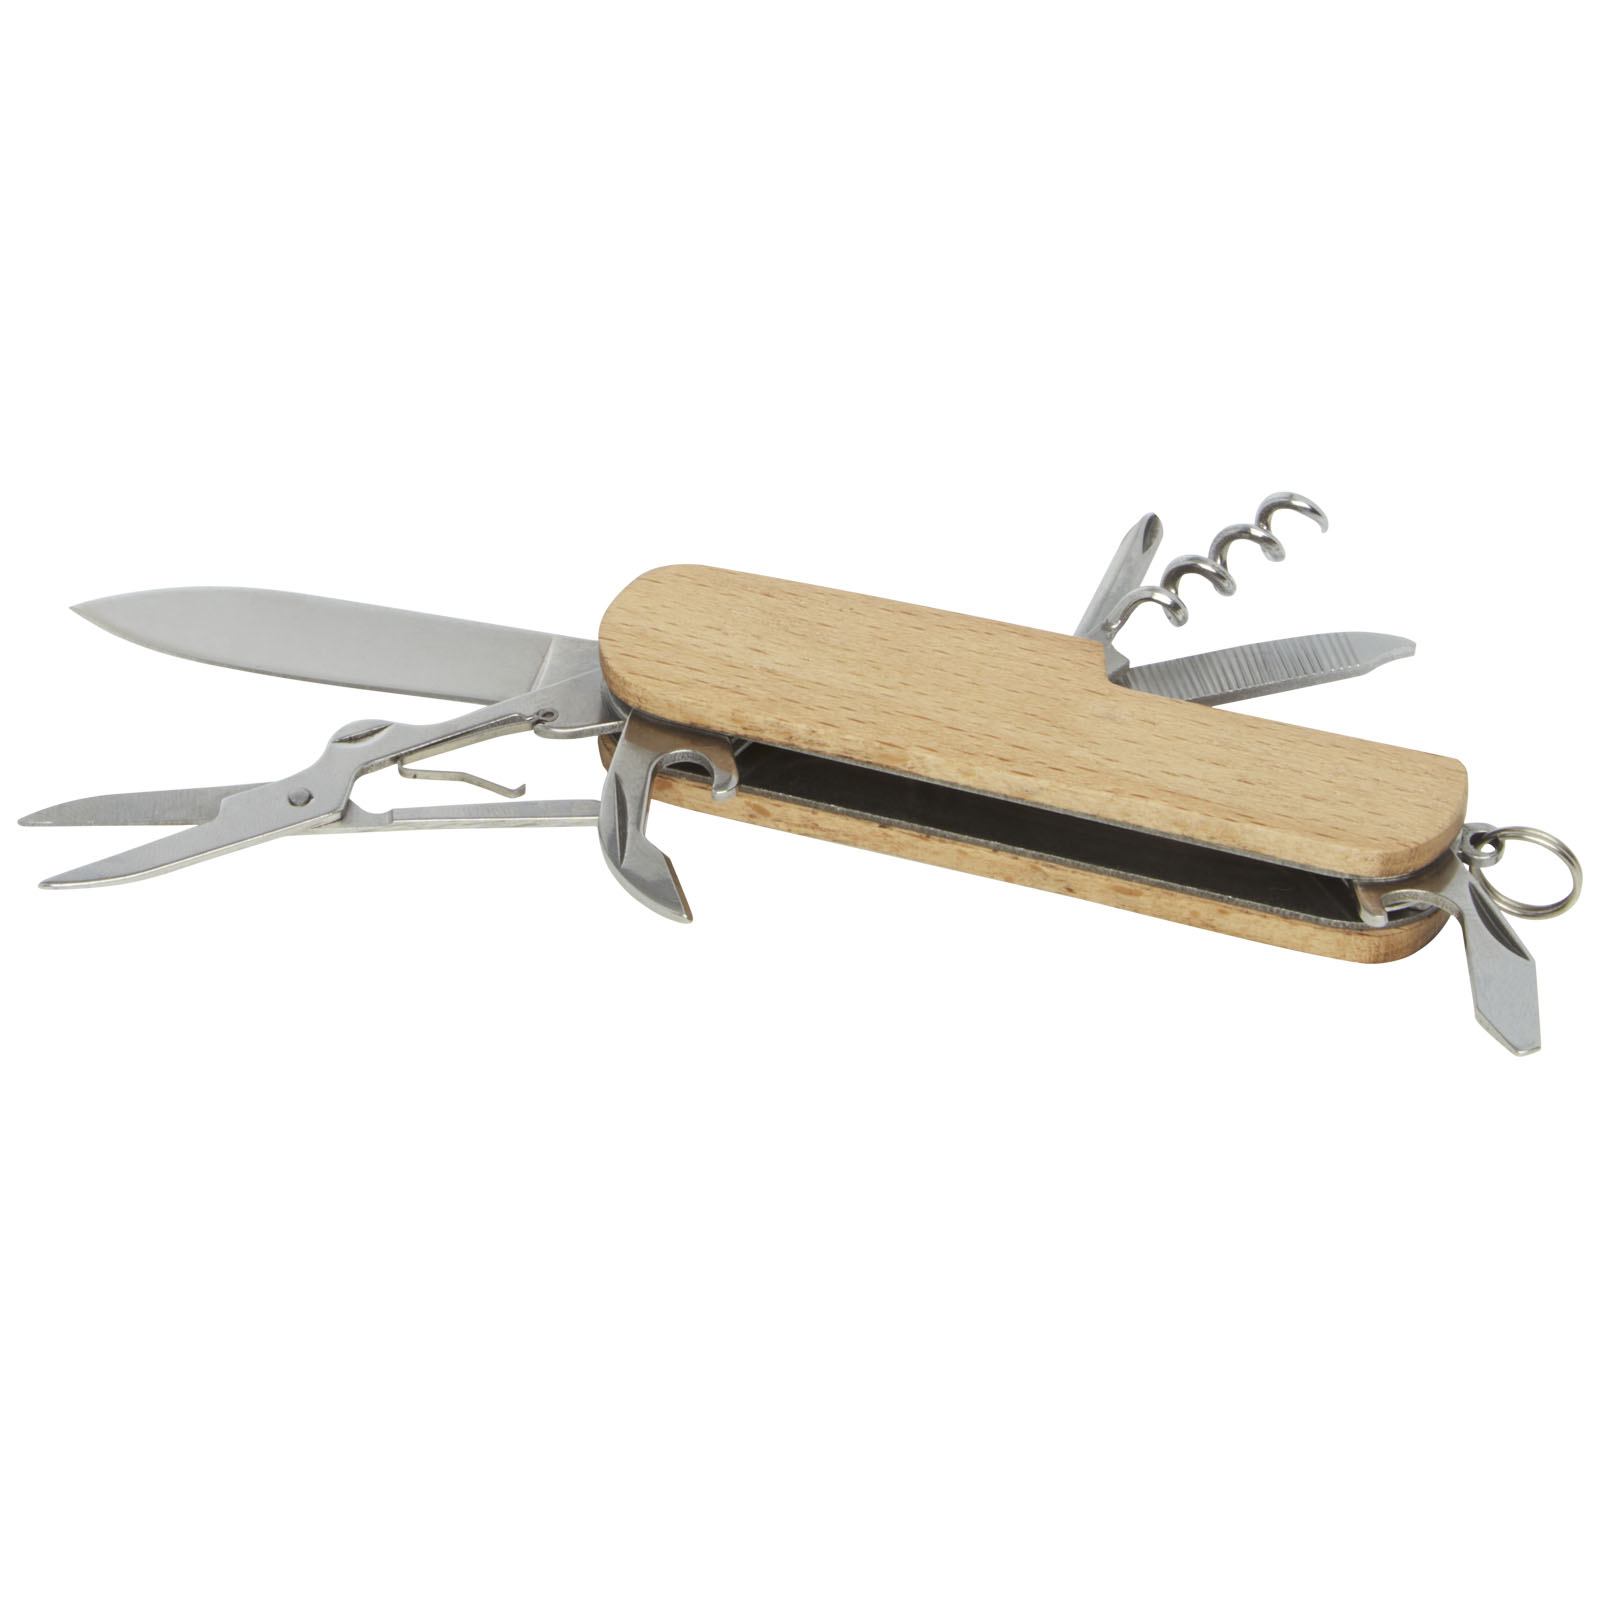 Outils et accessoires pour la voiture - Couteau de poche Richard en bois à 7 fonctions